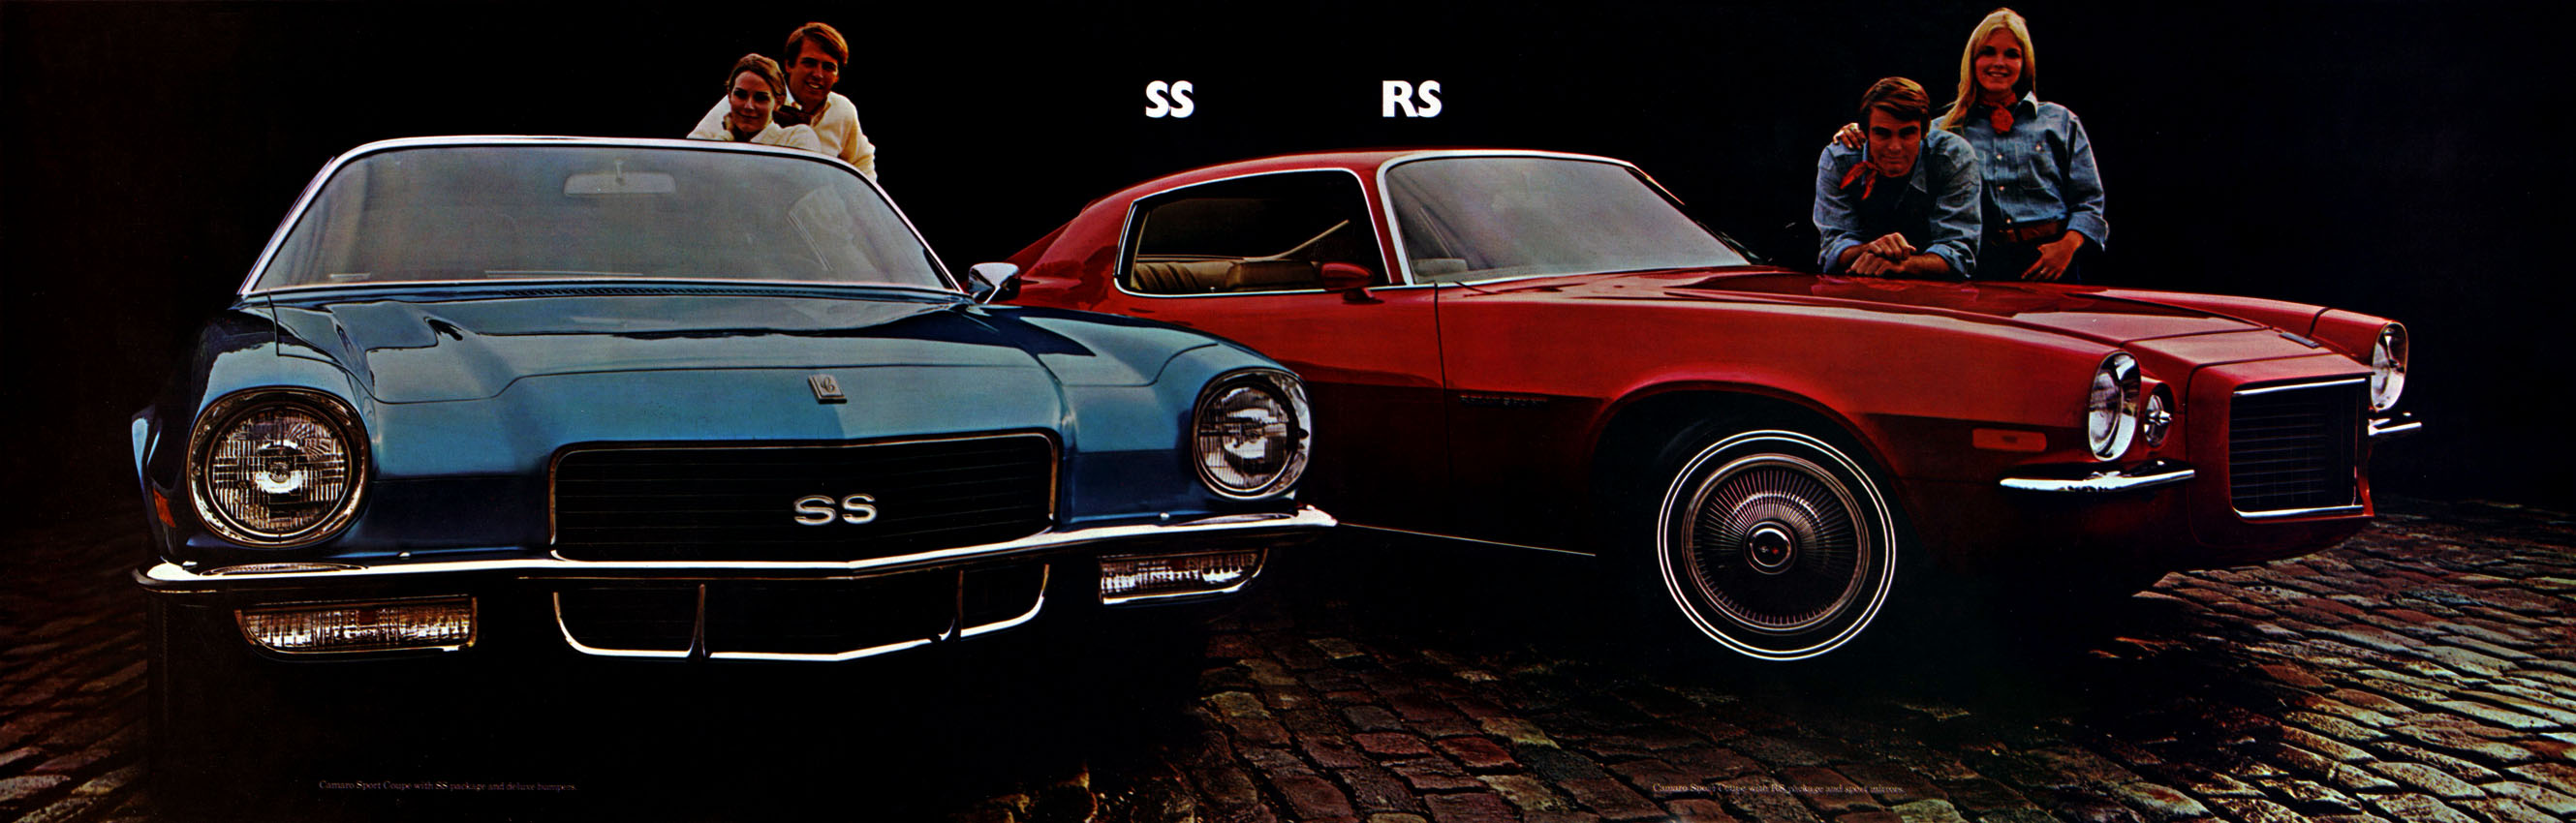 1970_Chevrolet_Camaro_Cdn-06-07-08